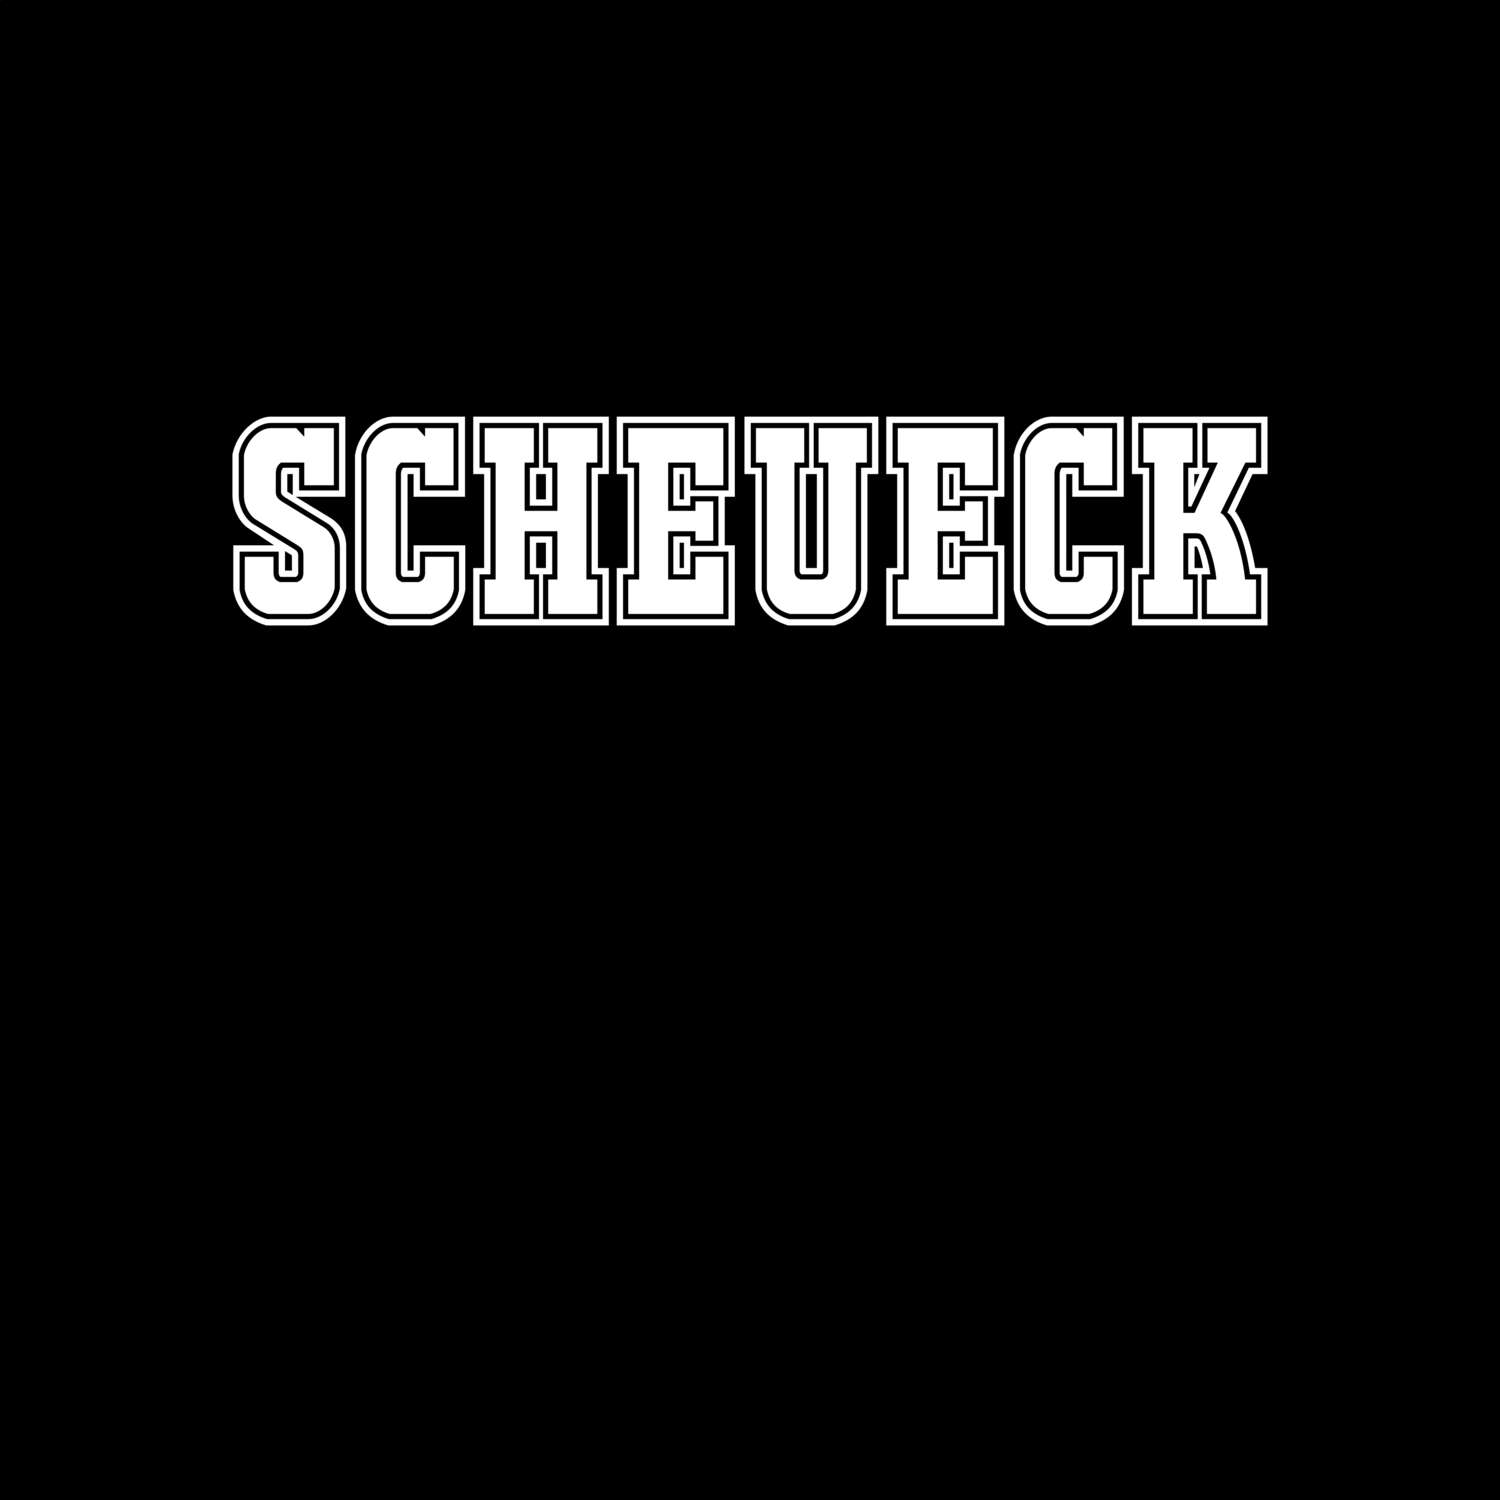 Scheueck T-Shirt »Classic«